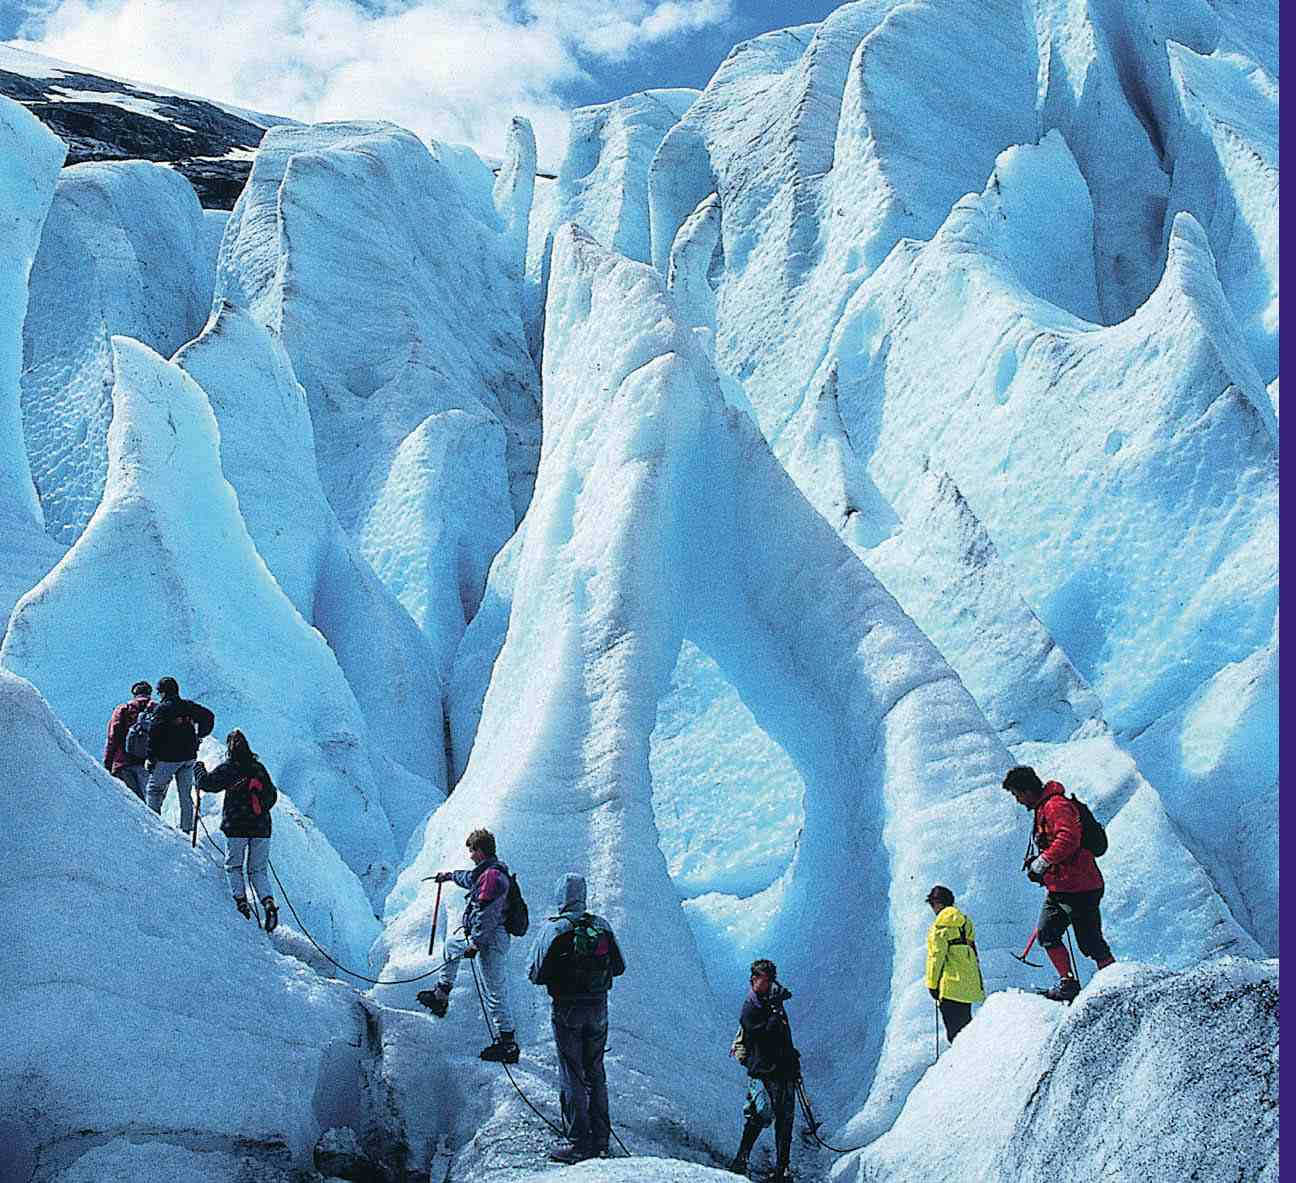 Nigardsbreen Glacier, Jostedal